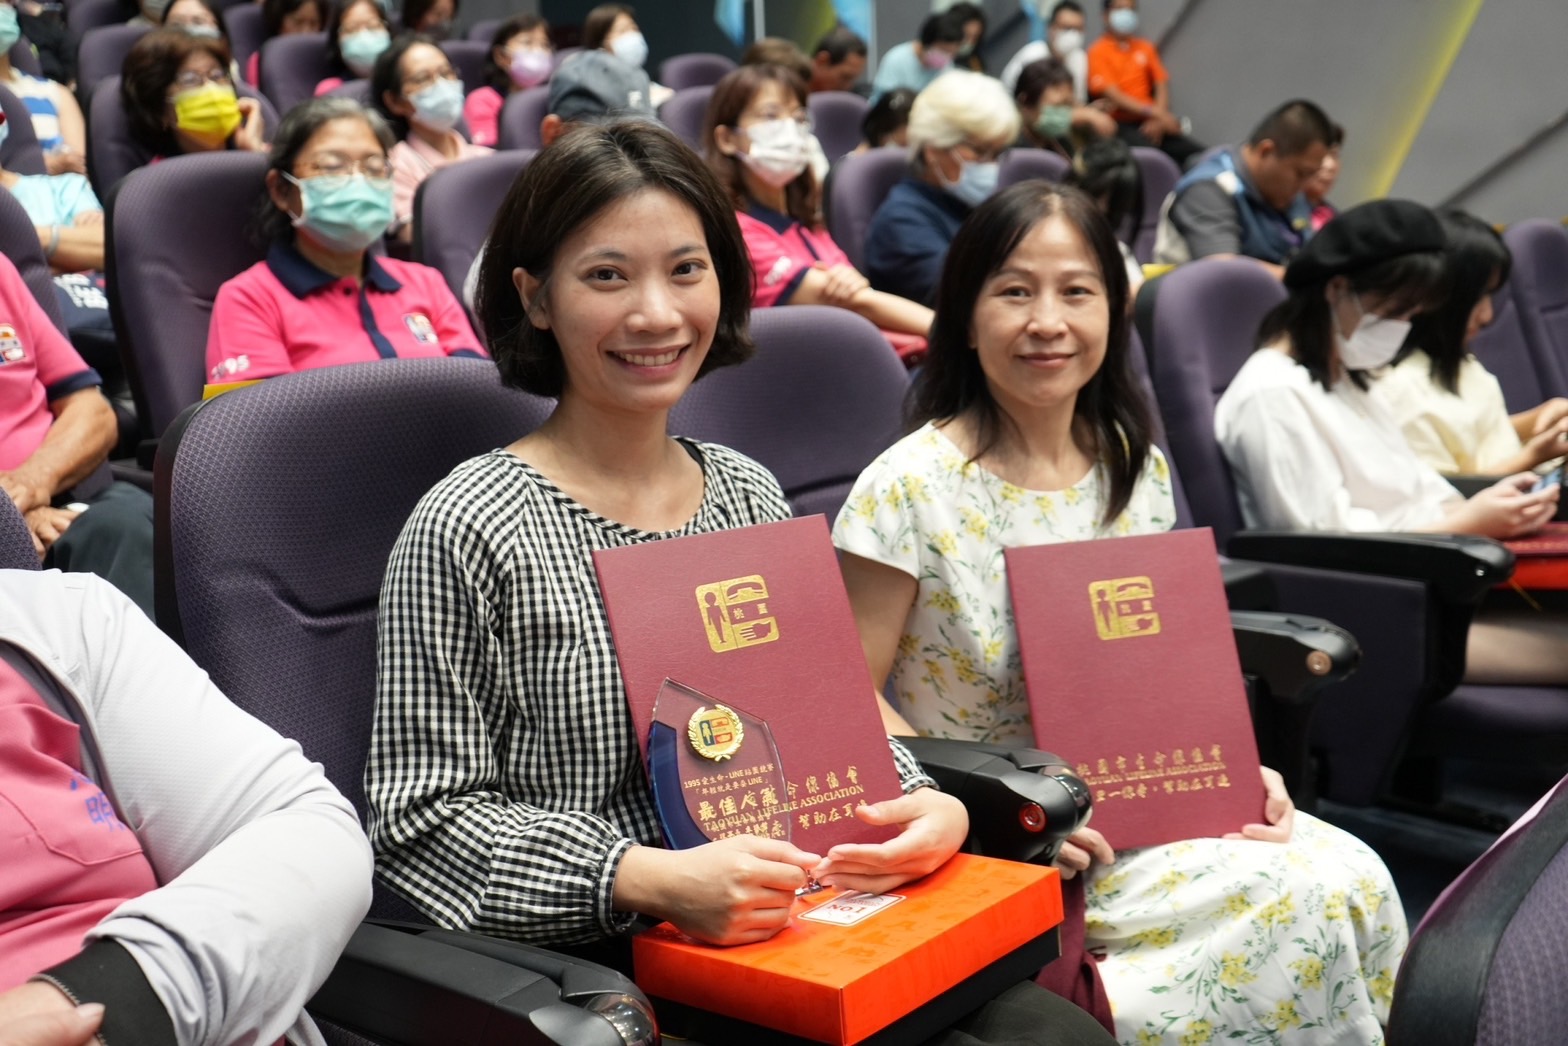 หลี่ ฮุ่ยเอิน (李慧恩) นักศึกษาจากมหาวิทยาลัยไคหนานเจ้าของรางวัล Popularity Award ในการประกวดครั้งนี้   ภาพ／จากมหาวิทยาลัยไคหนาน